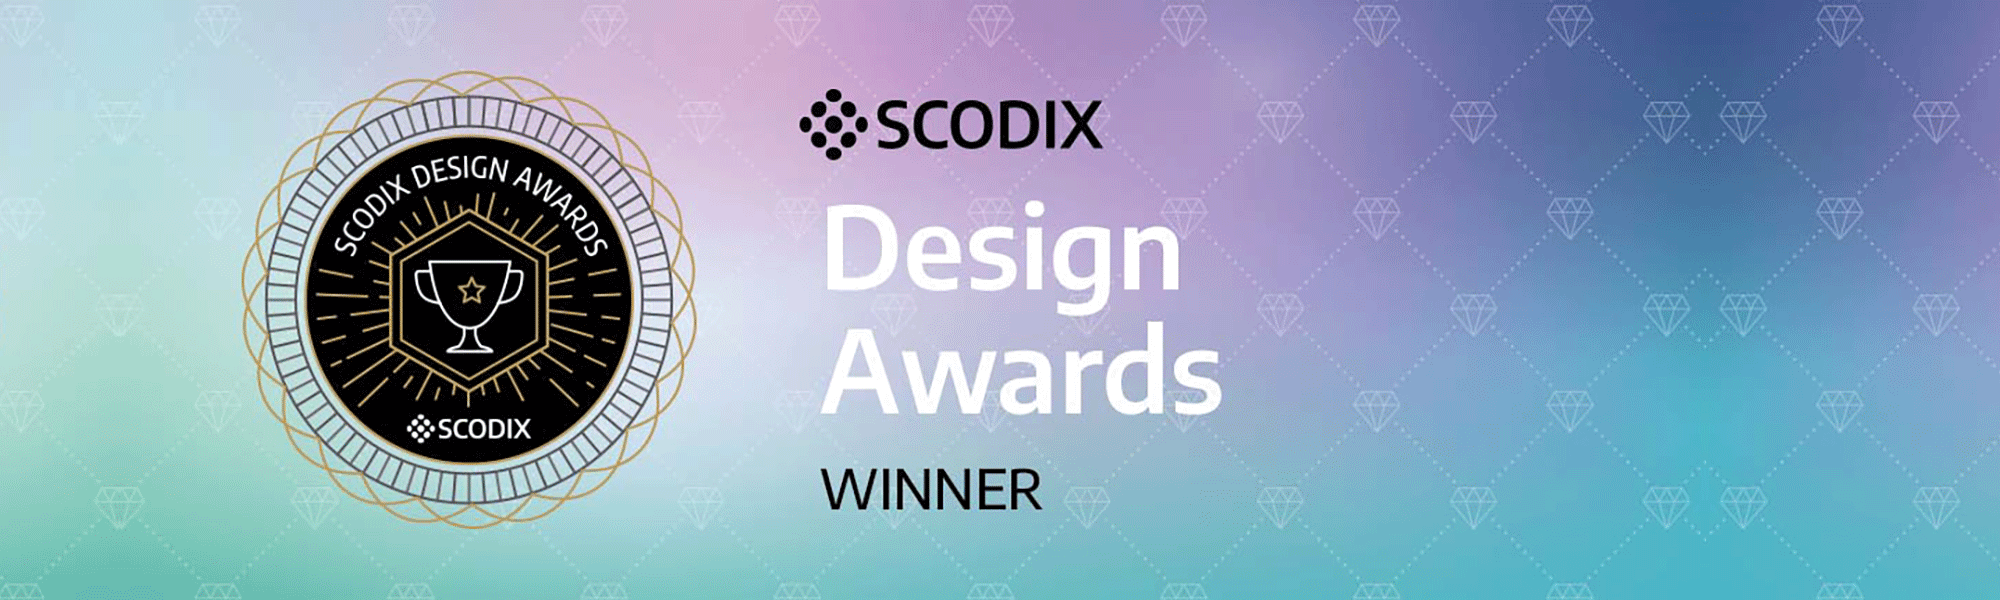 Scodix Design Awards テクノロジー部門1位獲得！